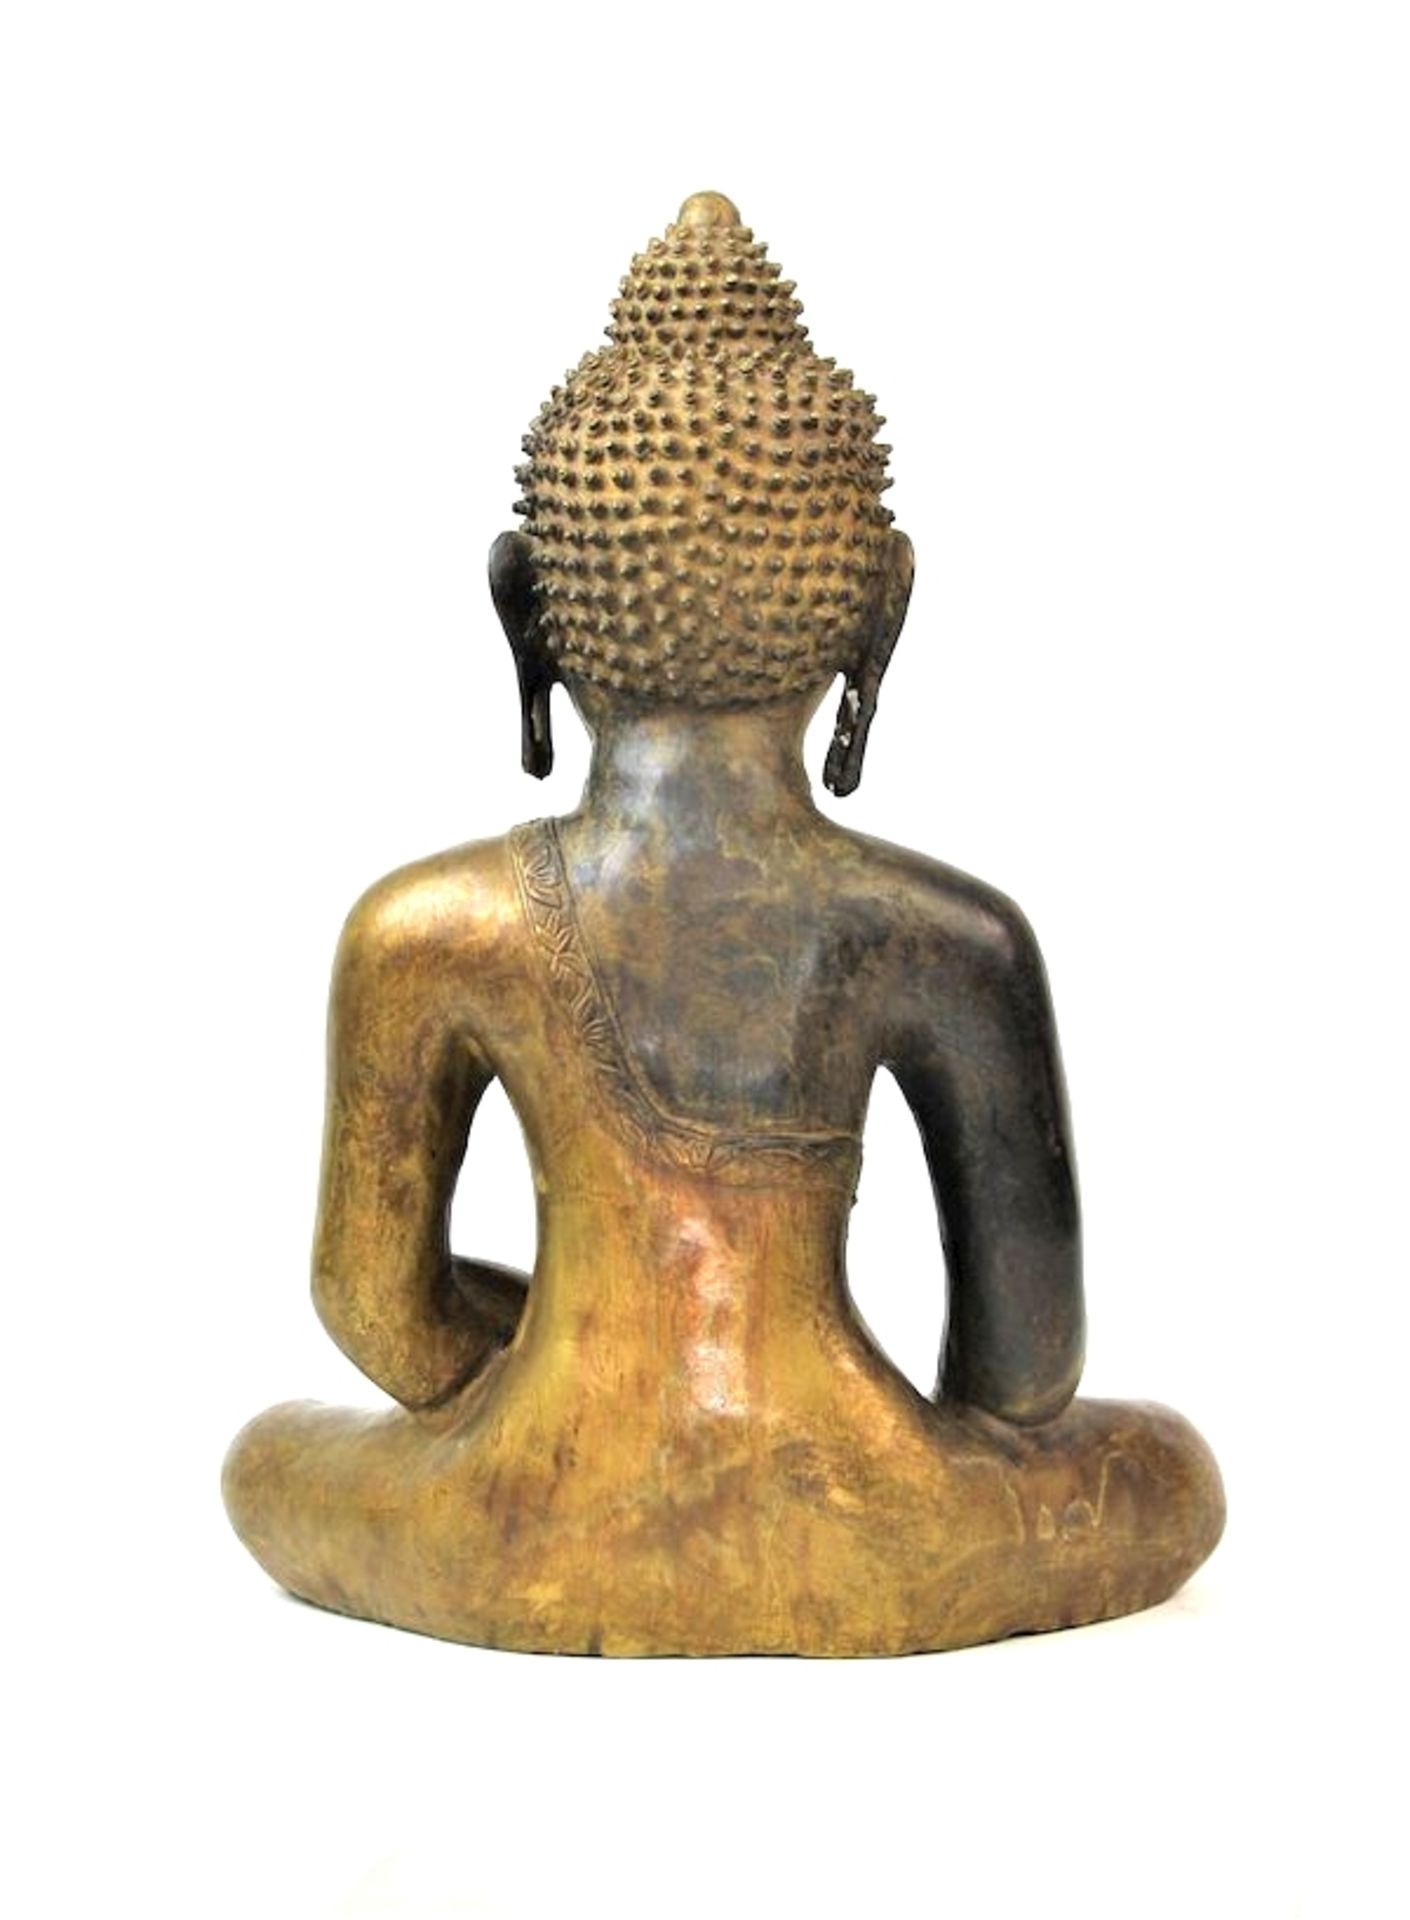 Großer Buddha Shakyamuni, Tibet wohl 16.Jhdt.Bronze, partiell feuervergoldet Boden neuzeitlich - Image 5 of 6